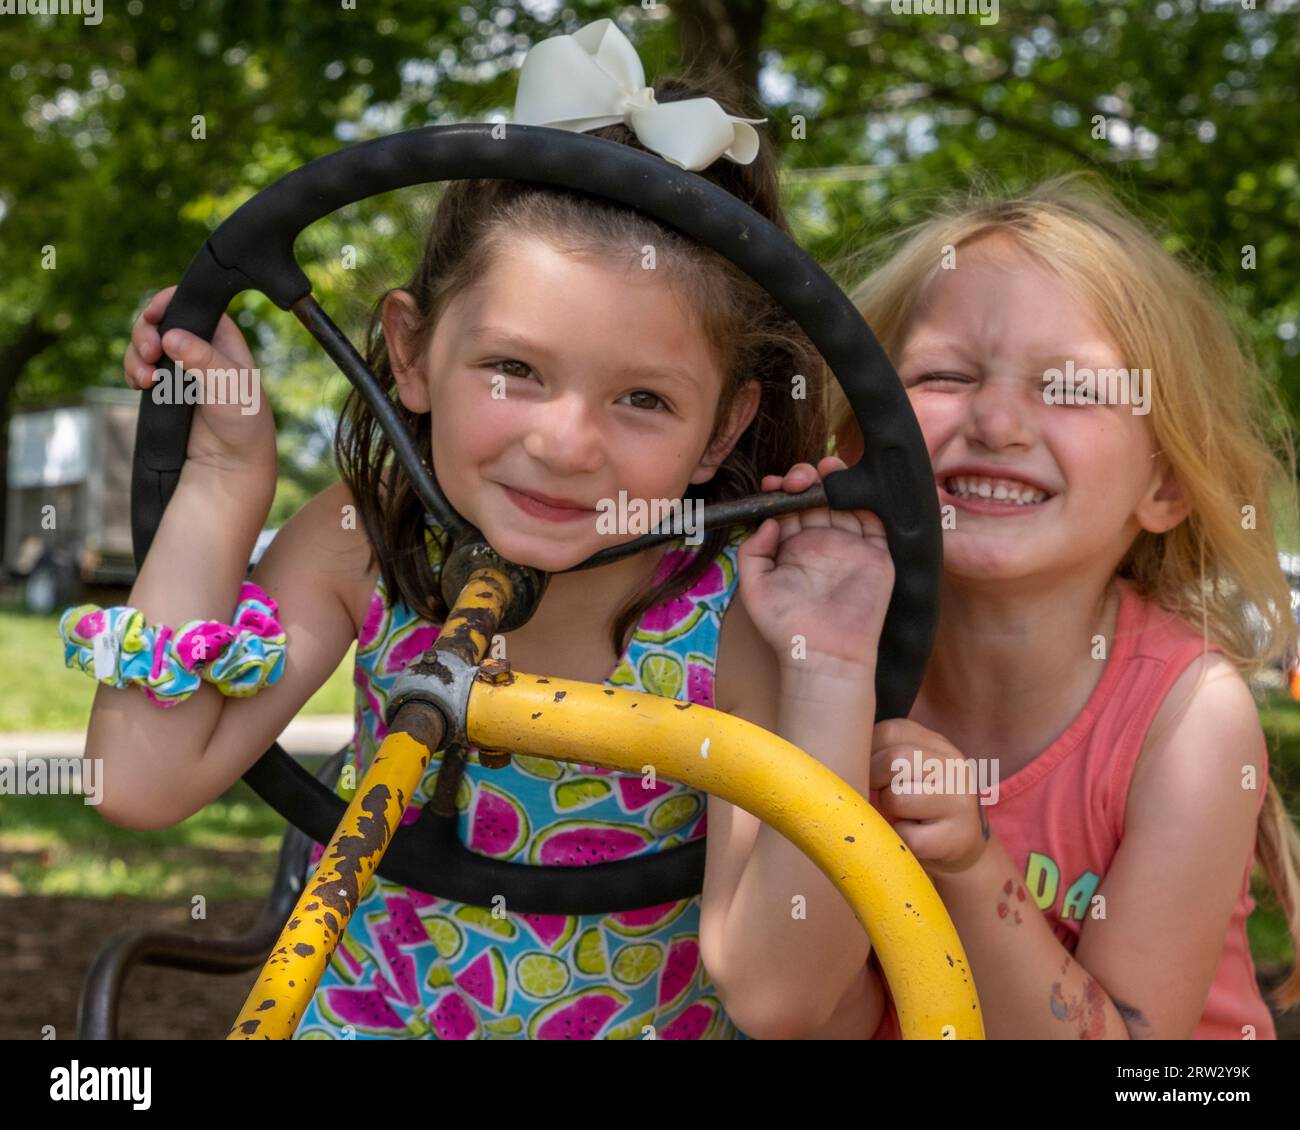 Deux filles s'amusant assis sur un tracteur de ferme Banque D'Images